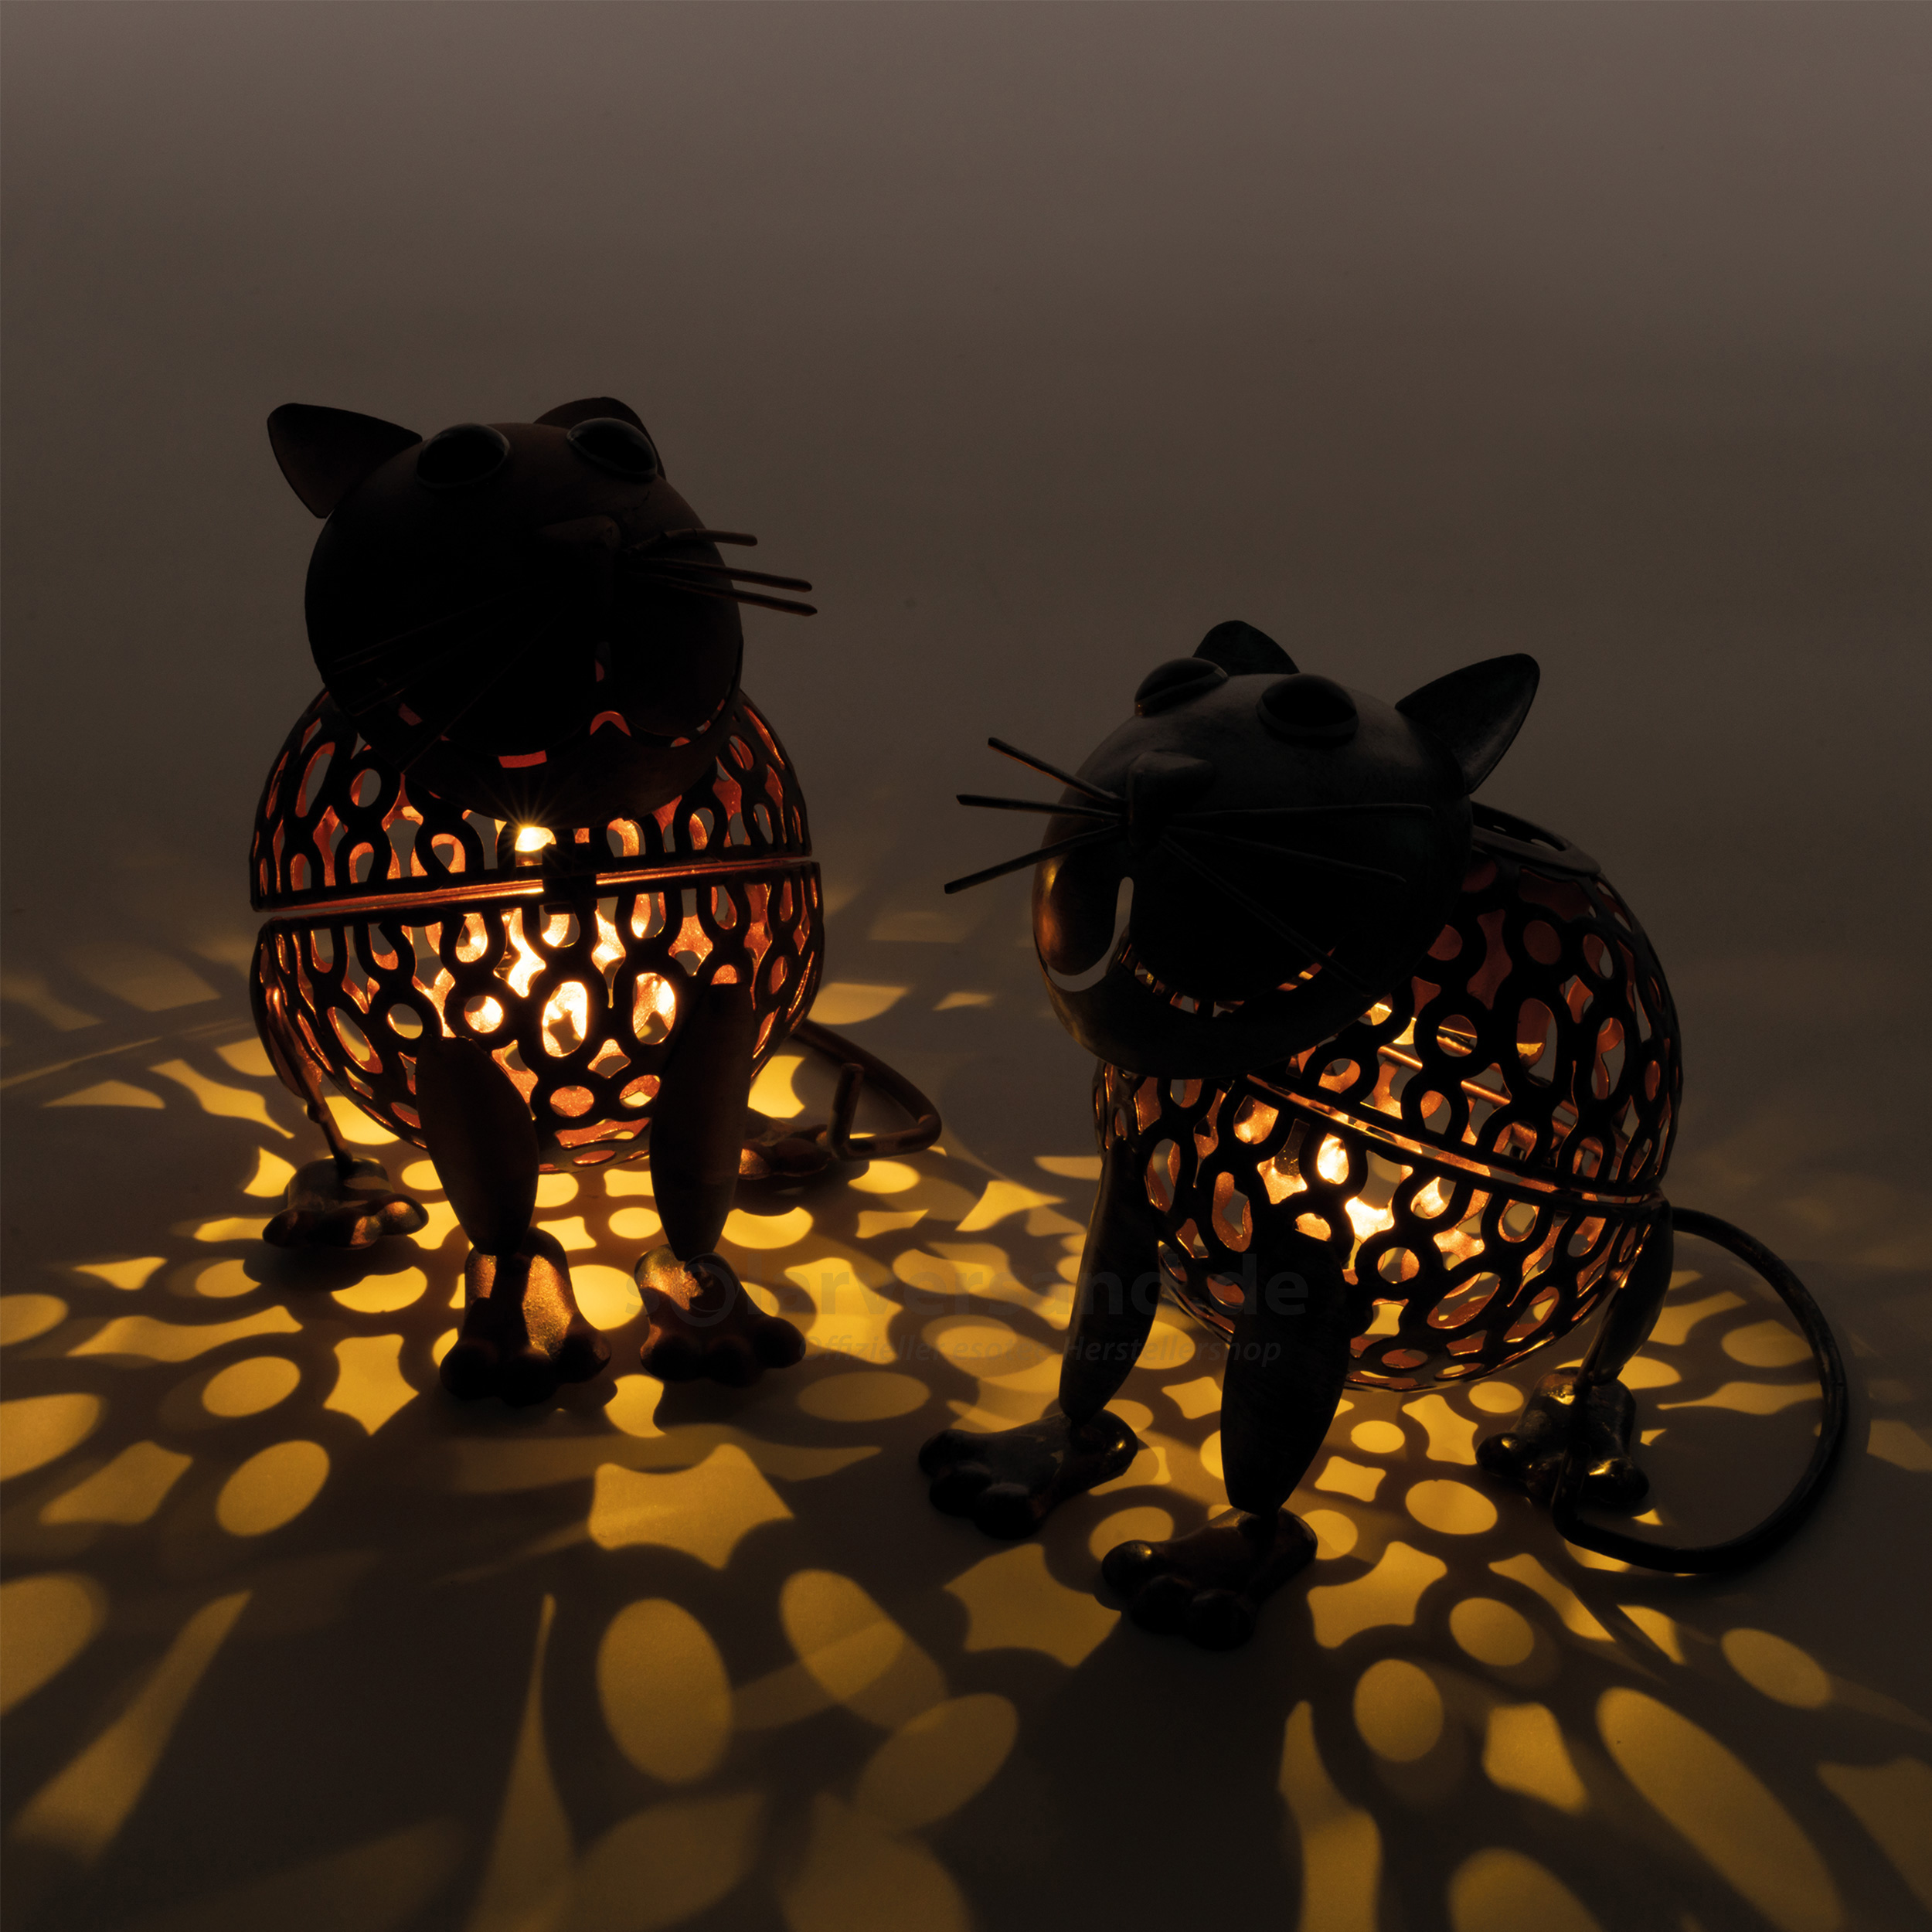 Solar Deko-Figuren Katzenpaar Koko & Kiki aus Metall